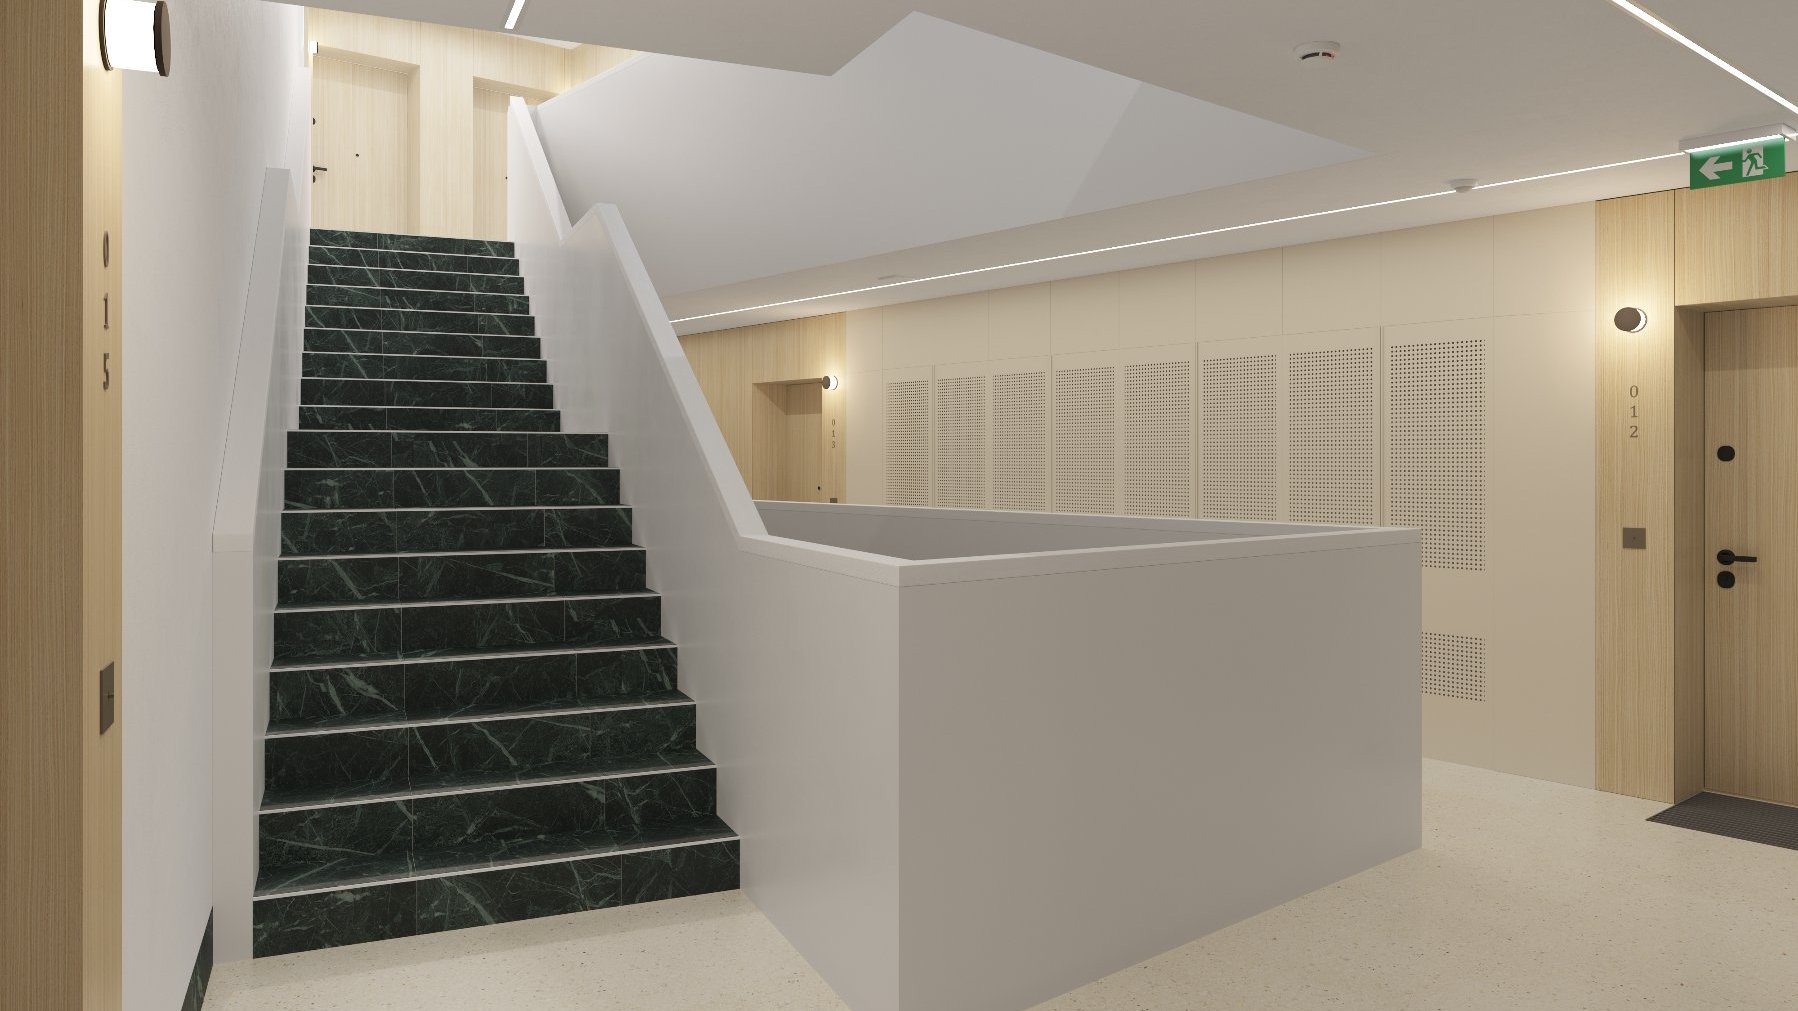 Obrazek przedstawia wizualizację klatki schodowej wewnątrz budynku Pułaskiego 19.